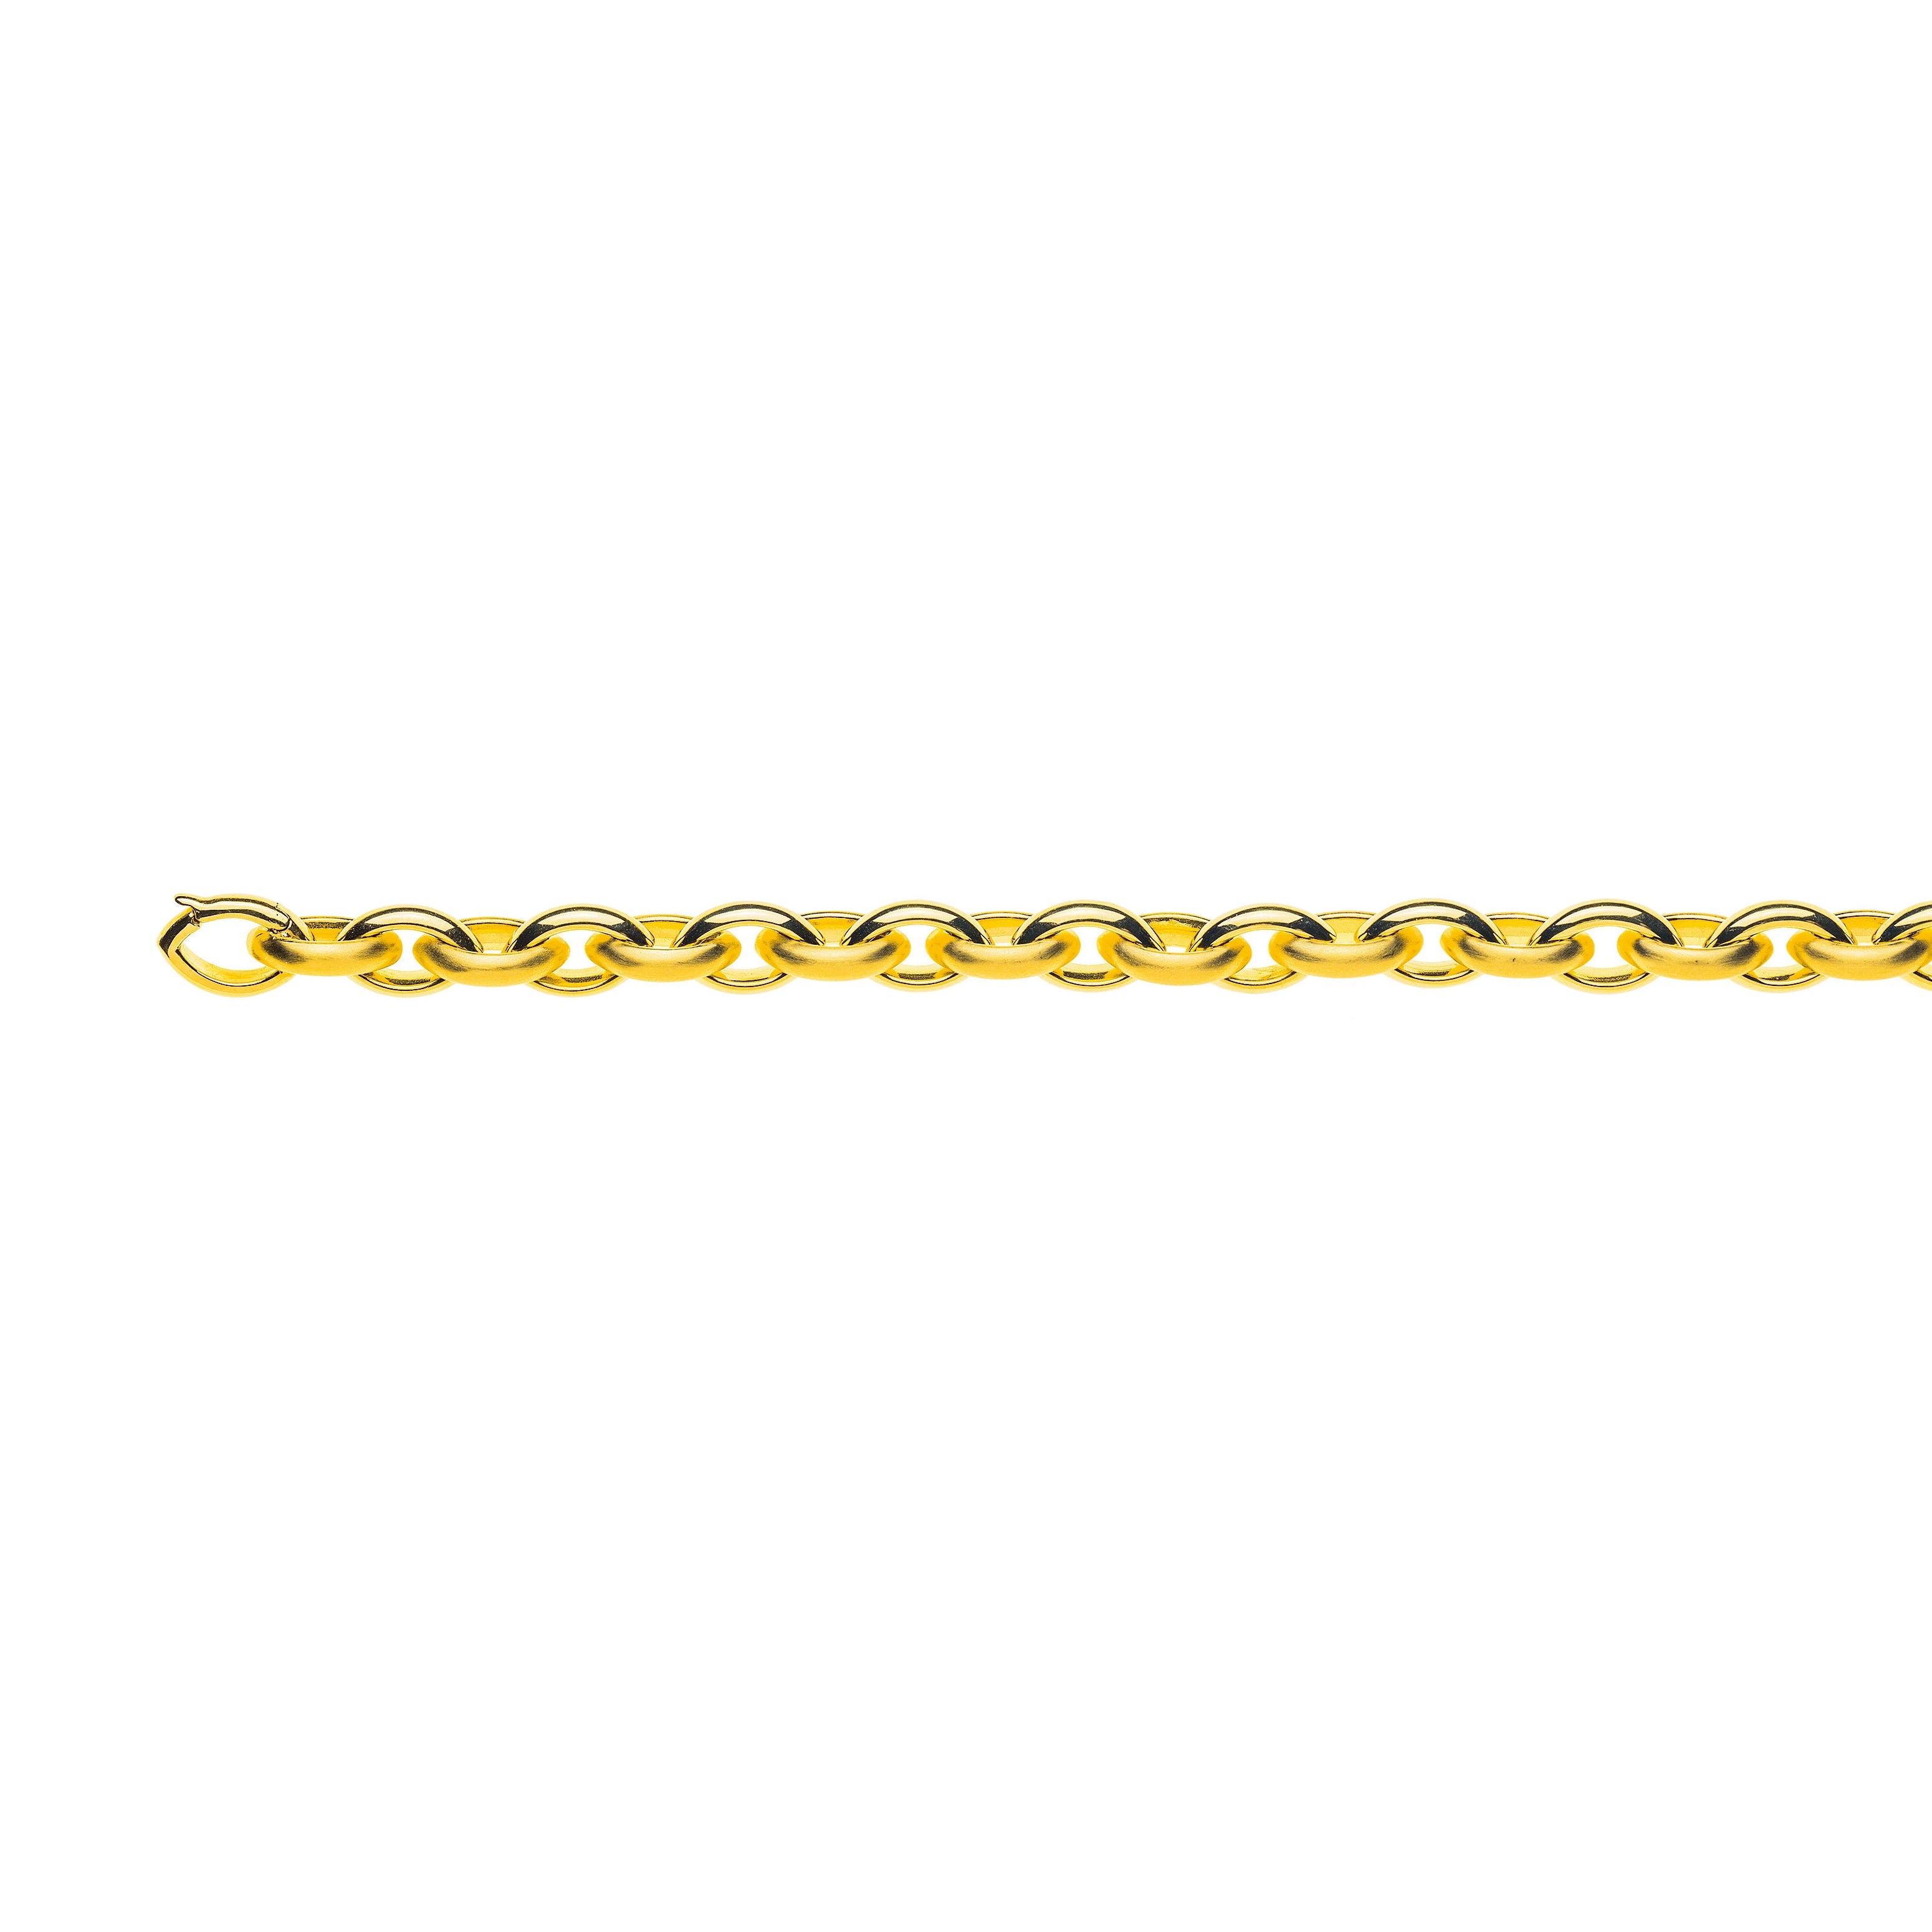 Handgefertigtes Collier Navette aus 750er Gelbgold: 45cm, 9.5mm Breite